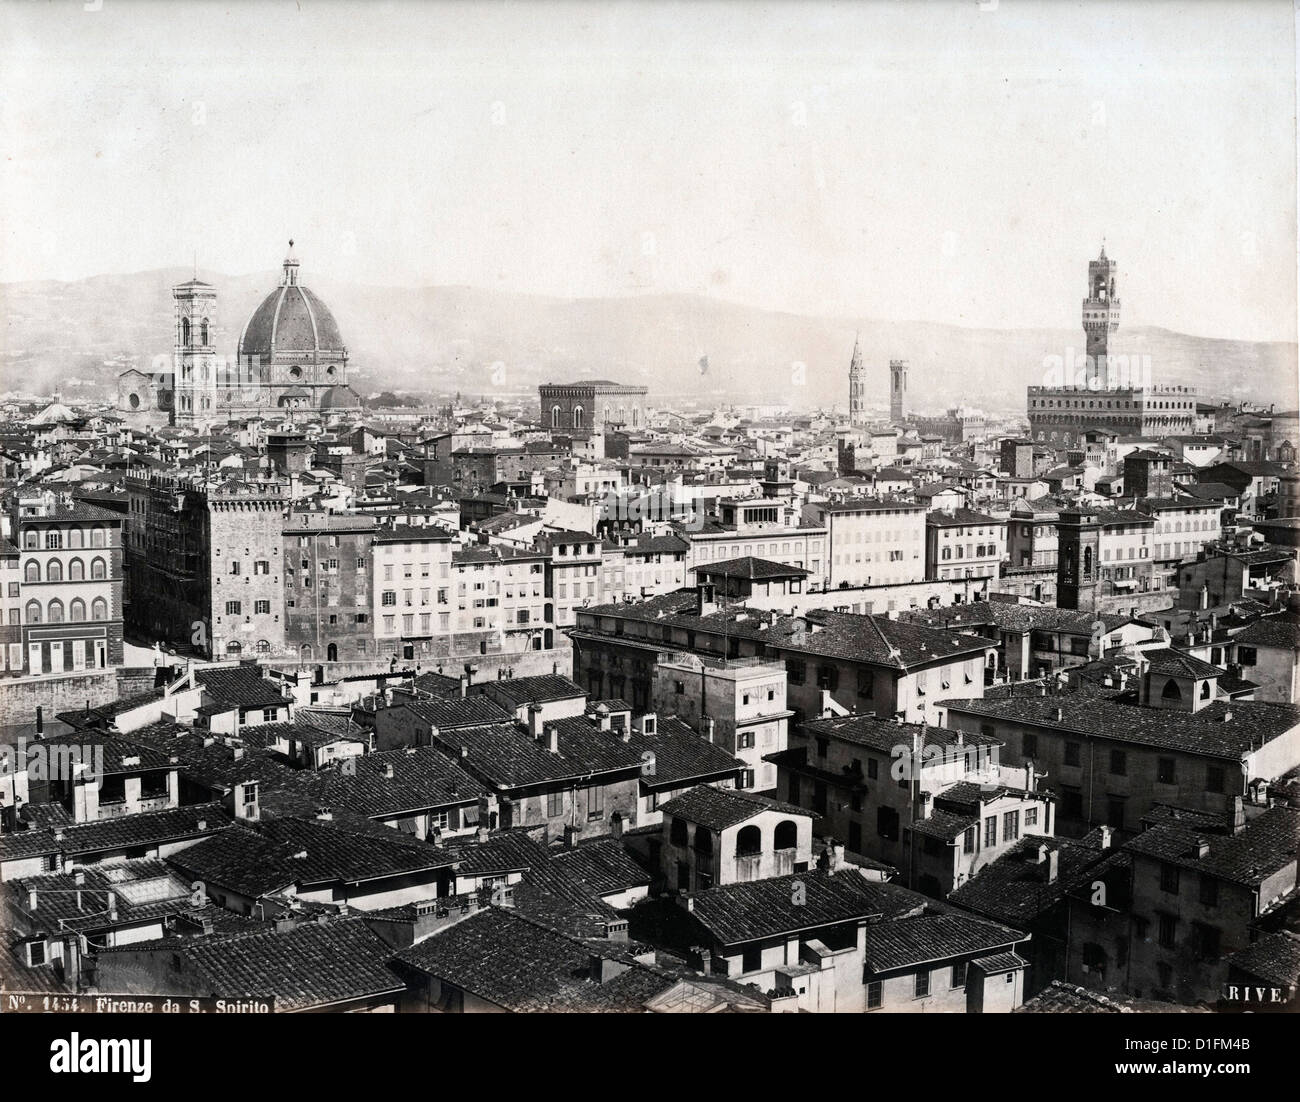 Da Firenze Basilica di Santo Spirito, ca 1880, da Roberto Rive Foto Stock